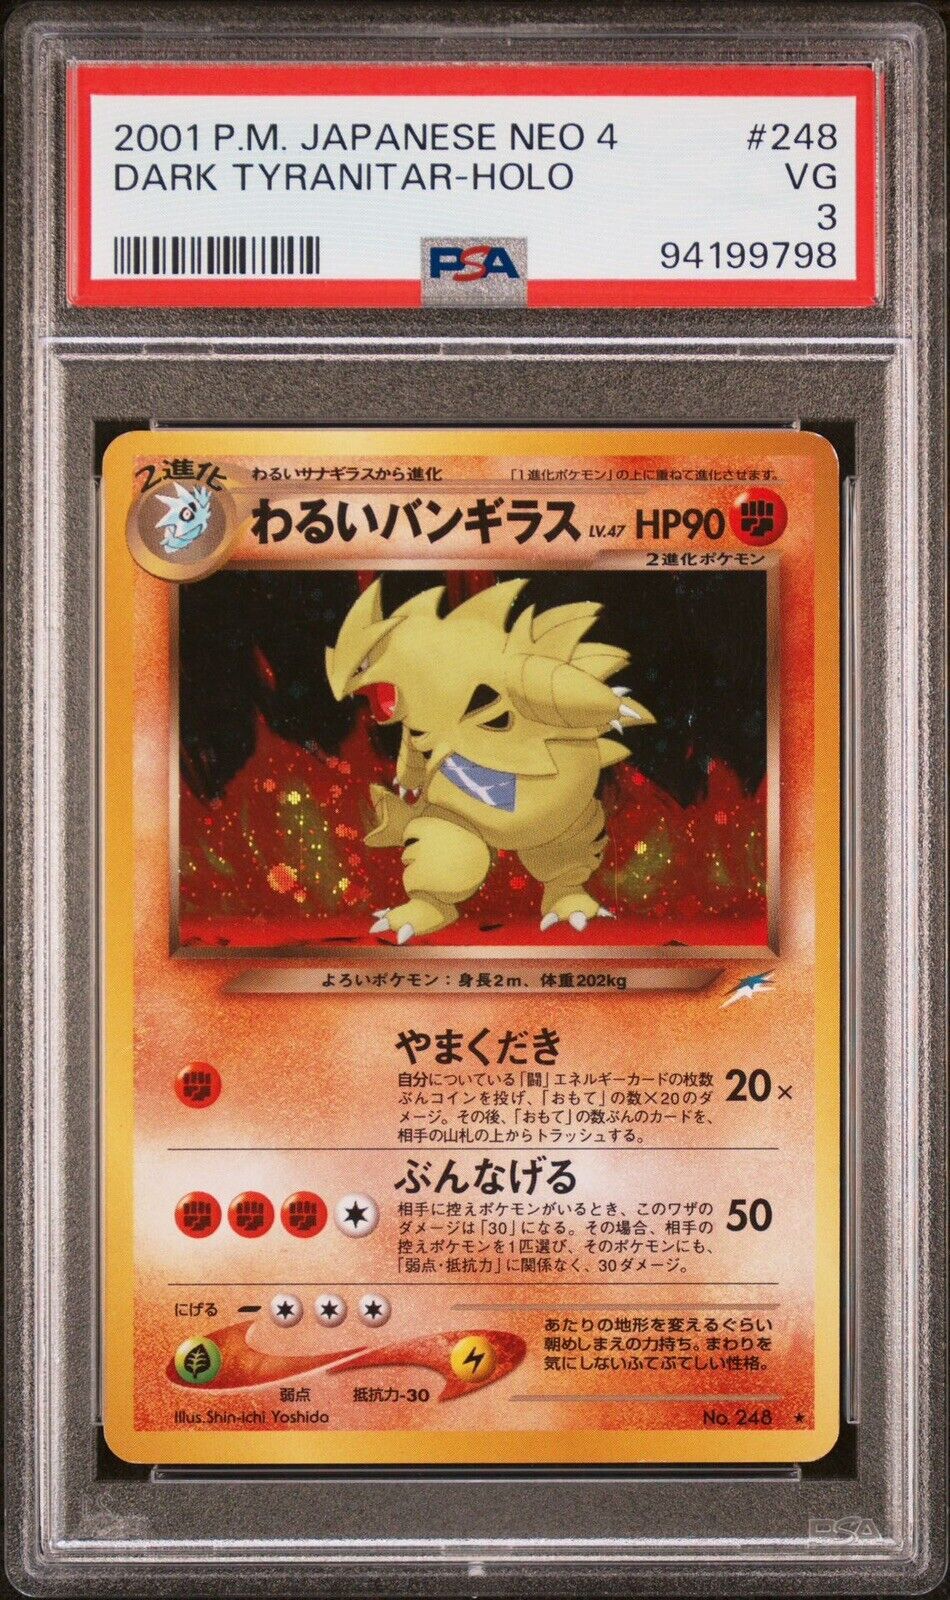 2001 P.M. JAPANESE NEO 4 DARK TYRANITAR-HOLO / Pokémon Card / Rare / Good📦🇺🇸✅